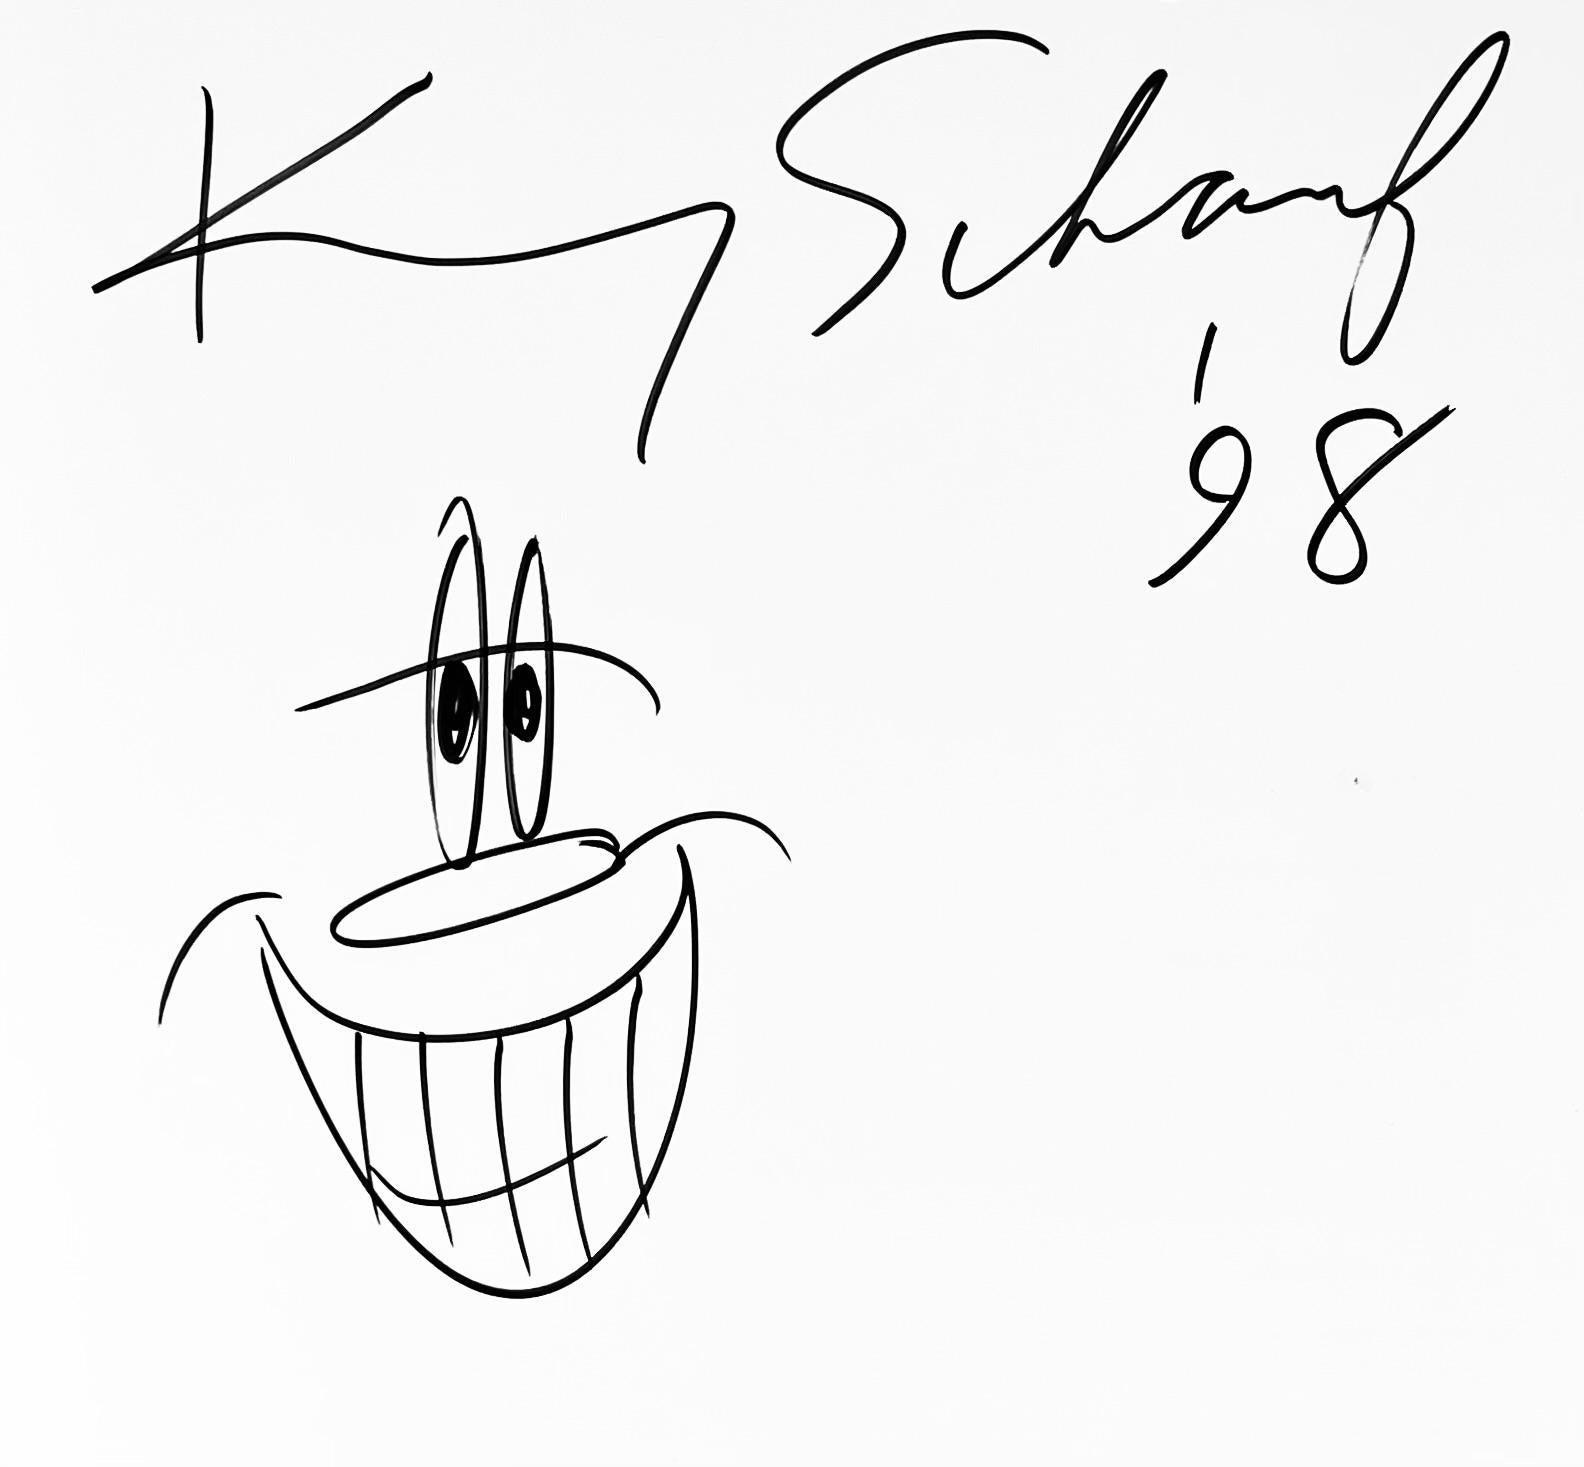 Kenny Scharf dessin 1998 (dessin de livre) :
Catalogue de l'exposition Jean-Michel Basquiat, Keith Haring, Kenny Scharf de 1990 comprenant un dessin de Kenny Scharf signé et dédicacé. Pour en savoir plus : 

En 1997, parallèlement à la rétrospective